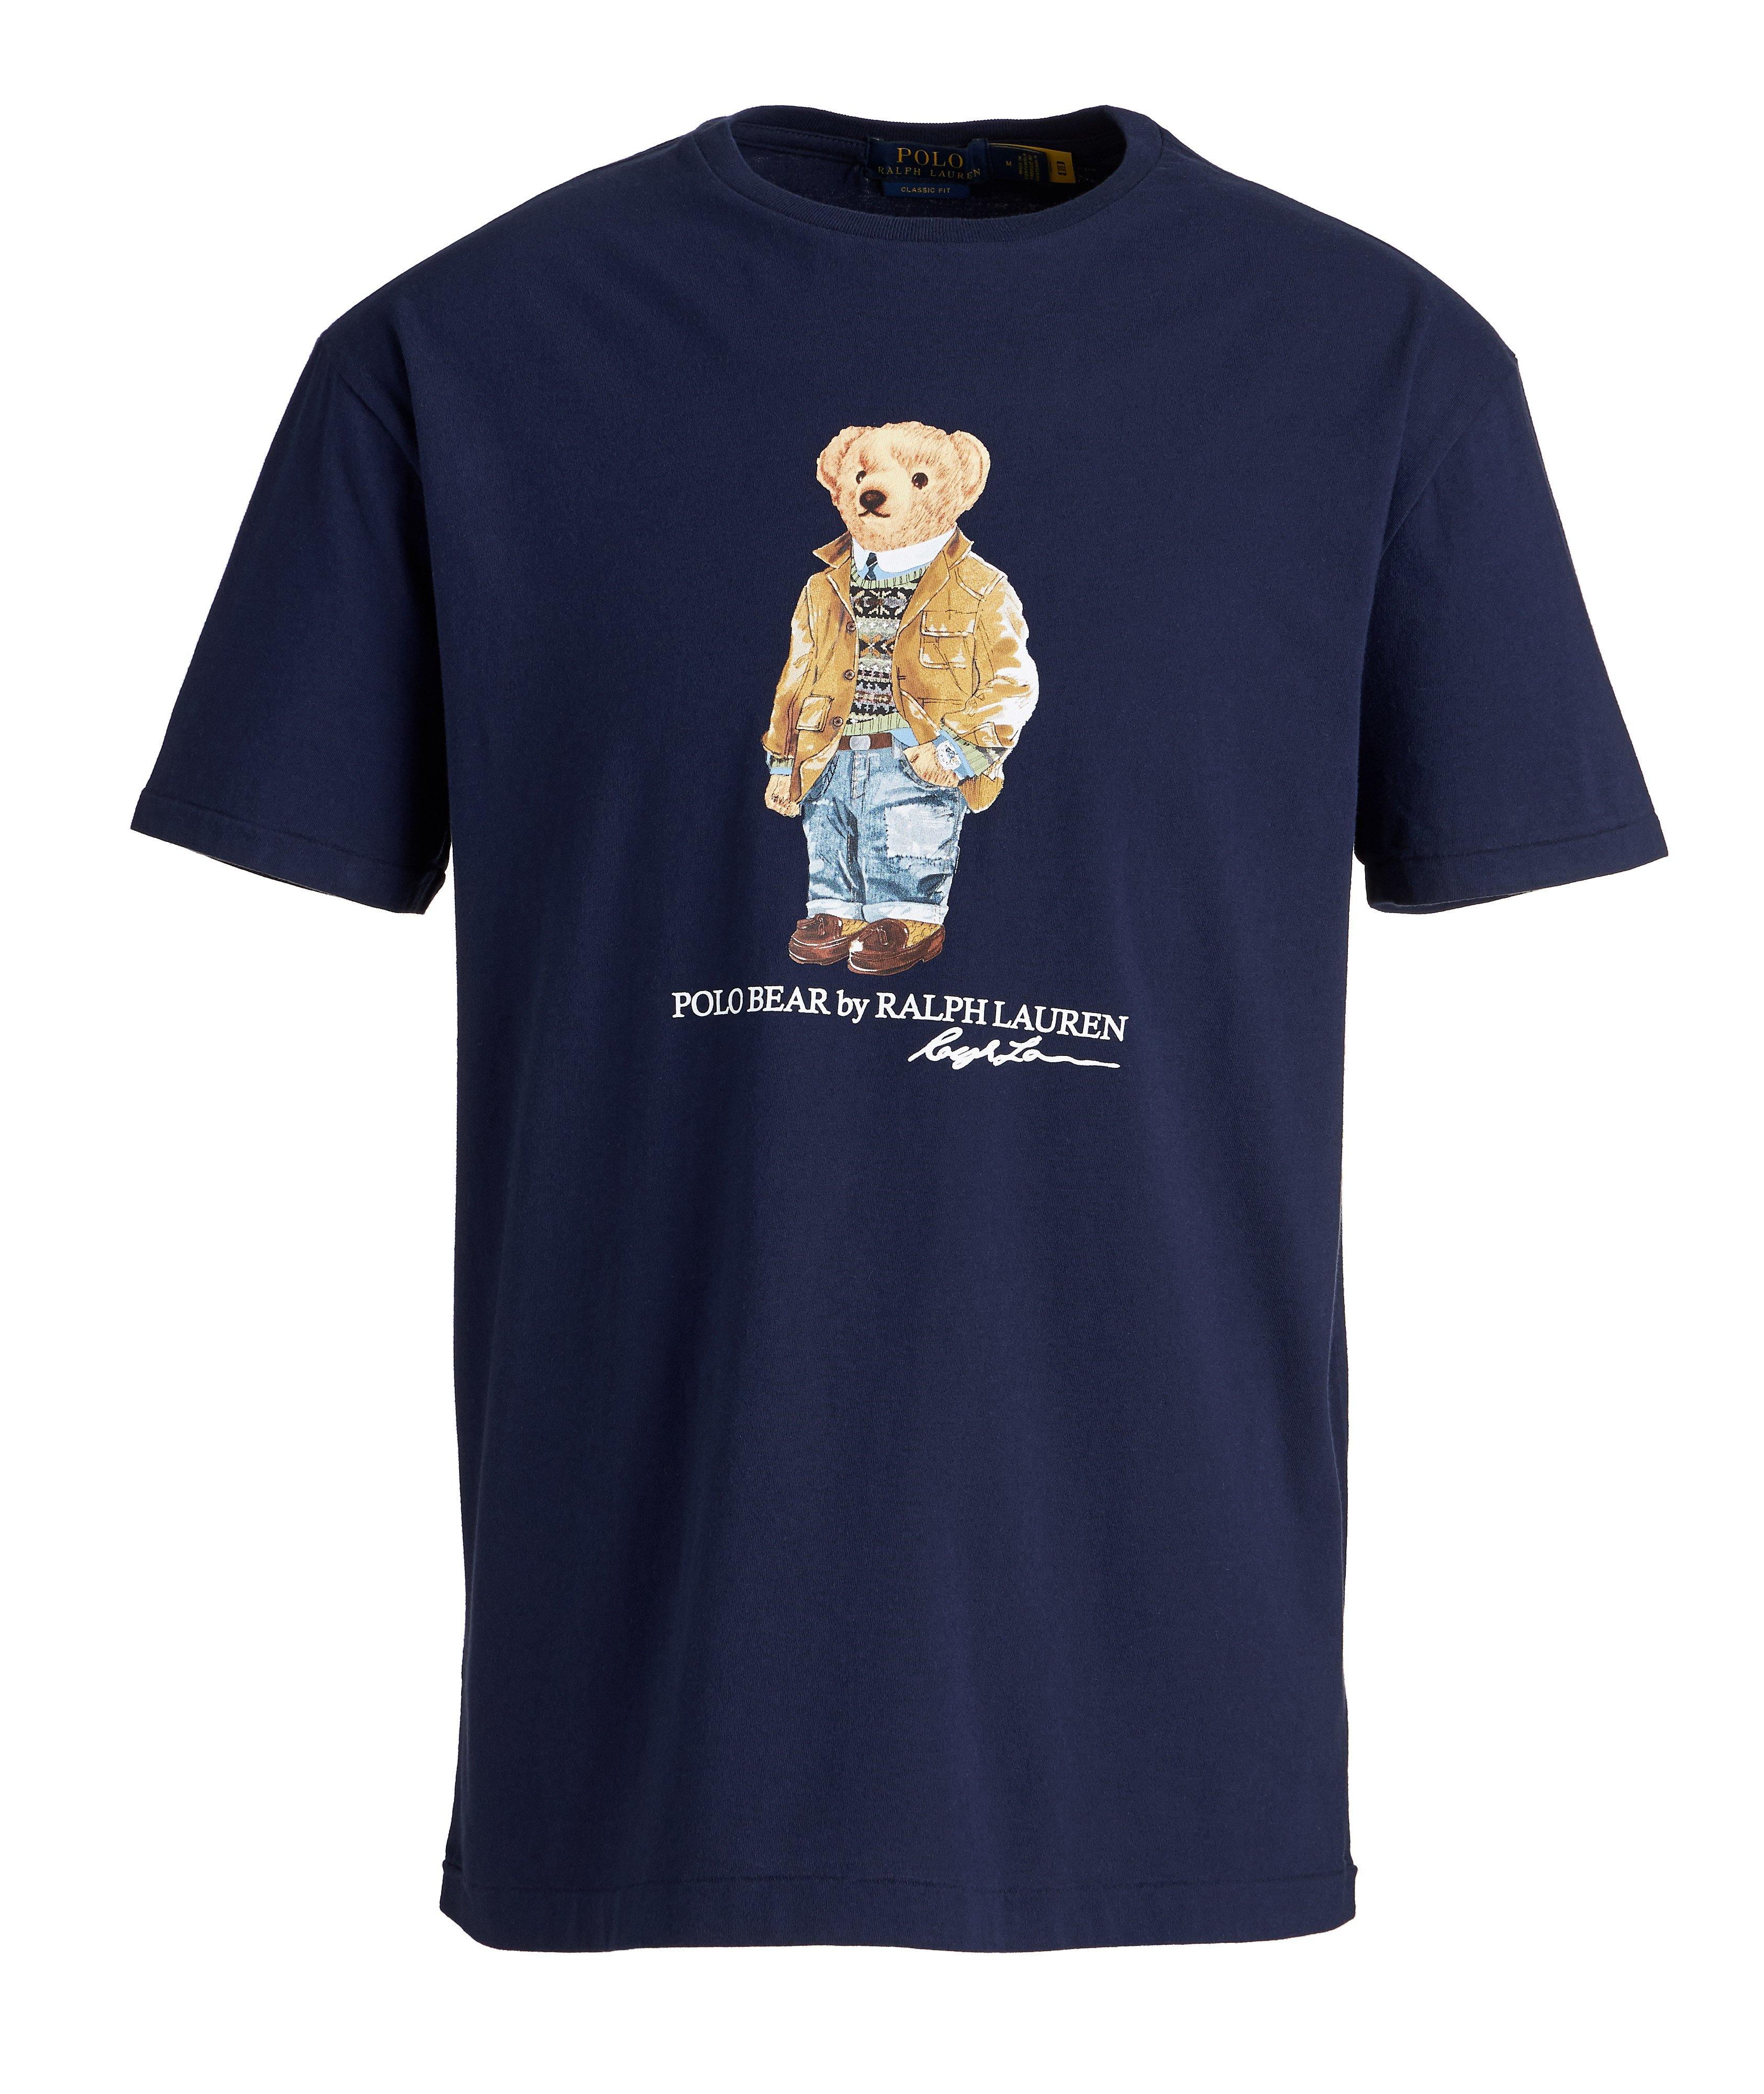 T-shirt en coton avec ourson mascotte image 0